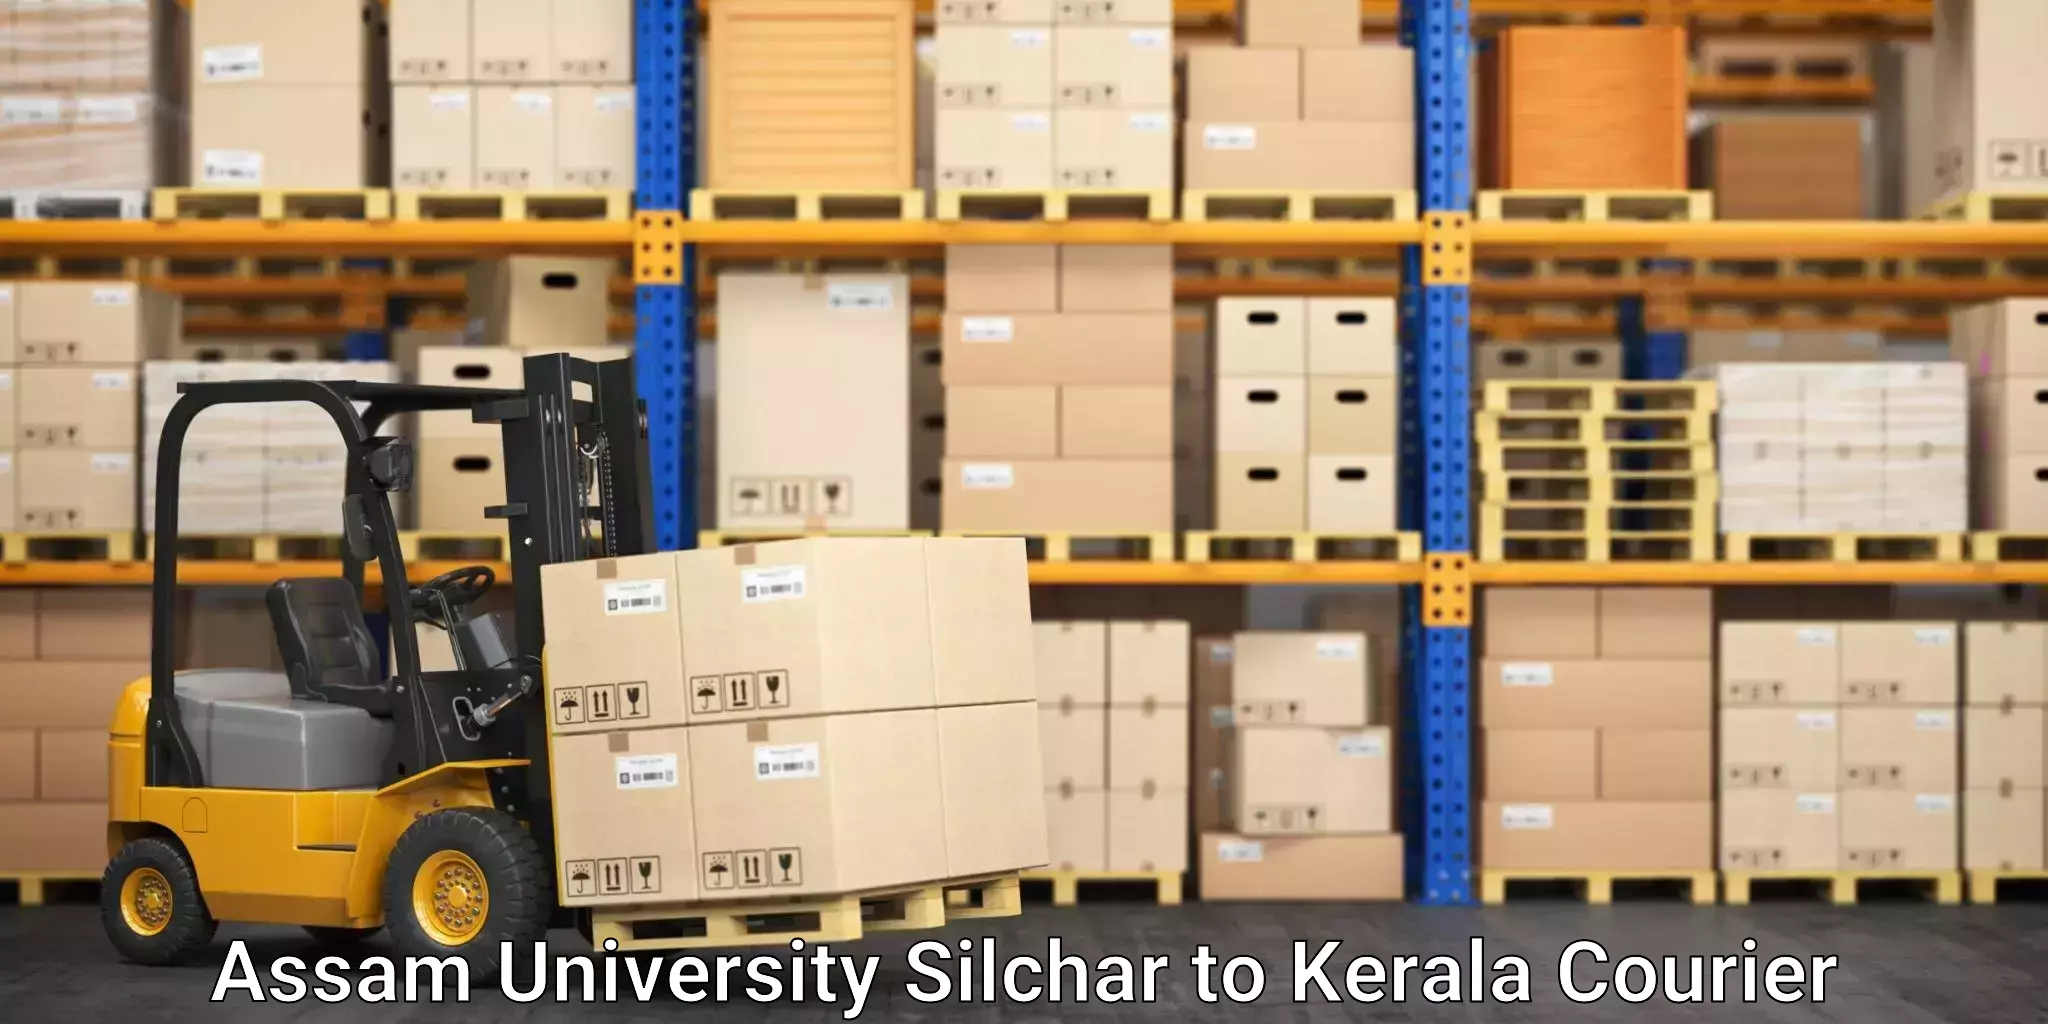 Premium courier solutions in Assam University Silchar to Thiruvananthapuram